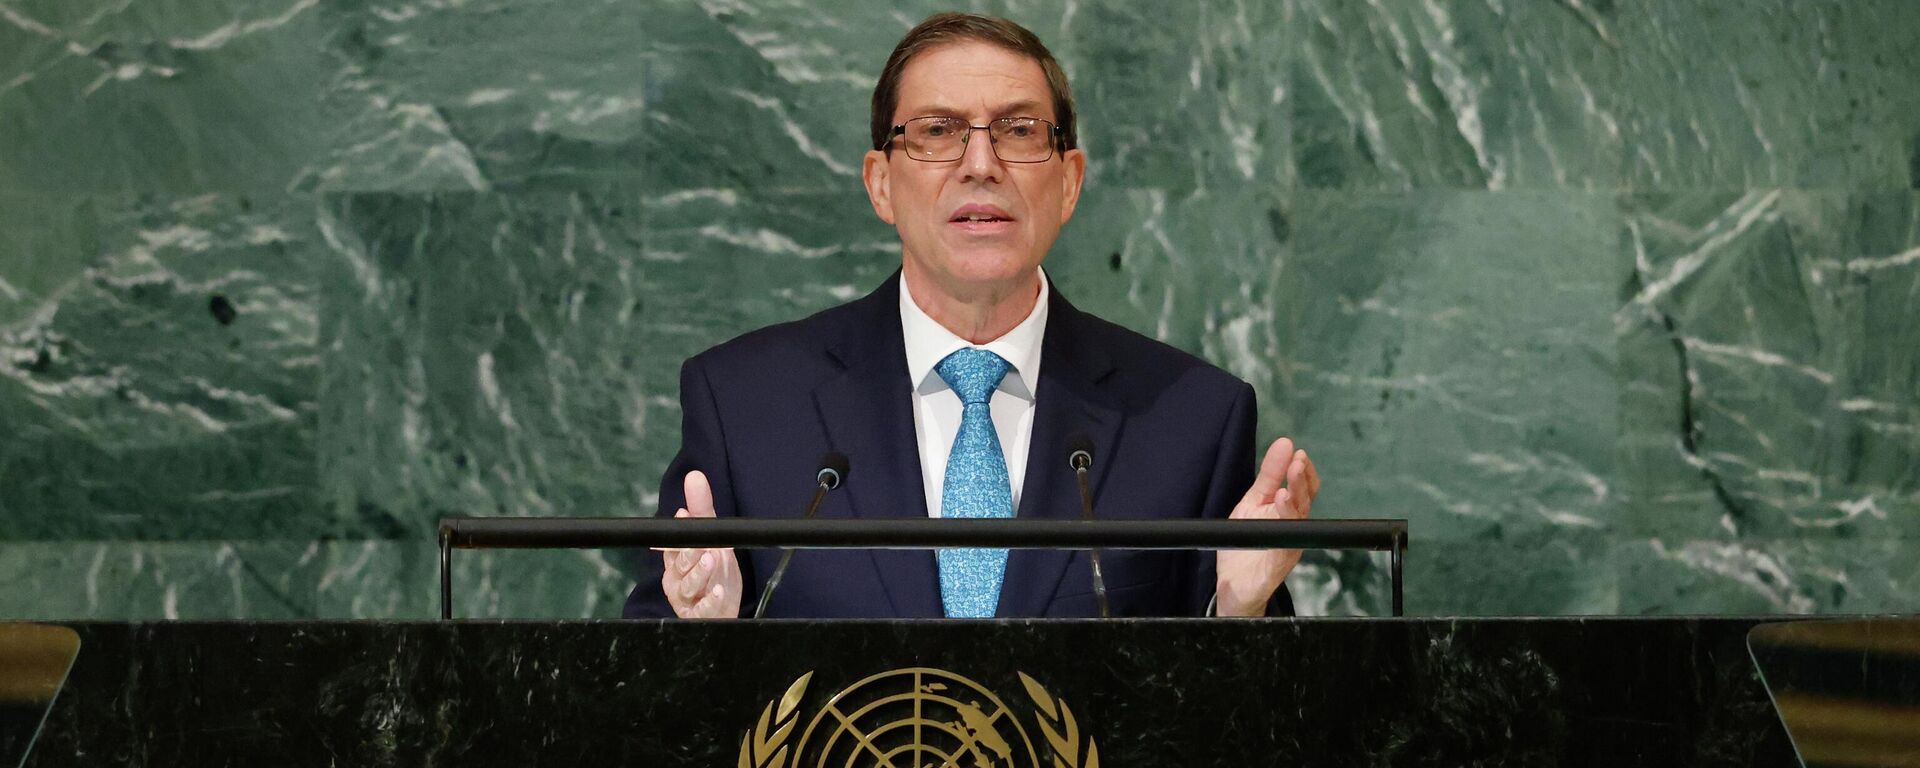 O ministro das Relações Exteriores de Cuba, Bruno Rodríguez Parrilla, discursa na 77ª sessão da Assembleia Geral das Nações Unidas, na sede da organização, em 21 de setembro de 2022 - Sputnik Brasil, 1920, 19.10.2022